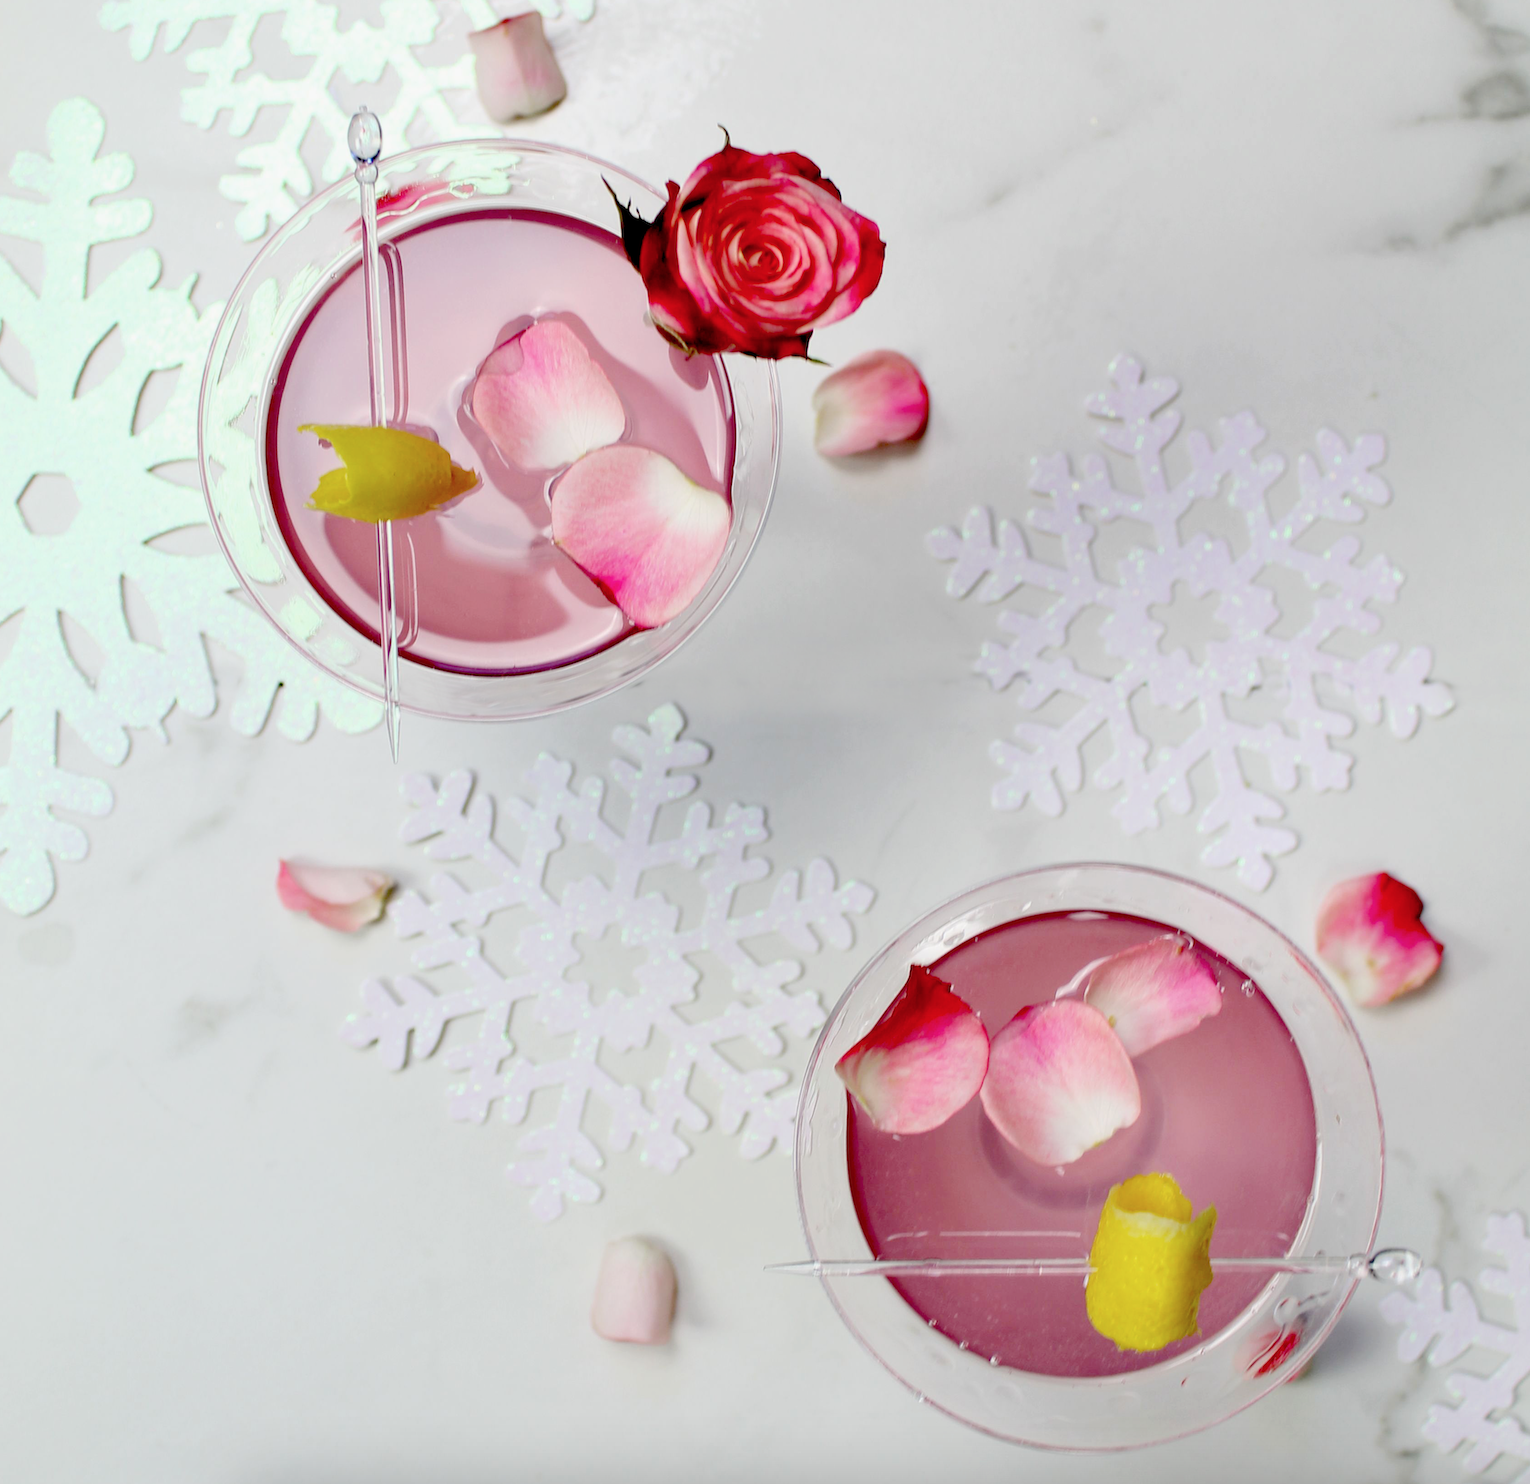 Image of Rose Lemon Drop Martini Recipe